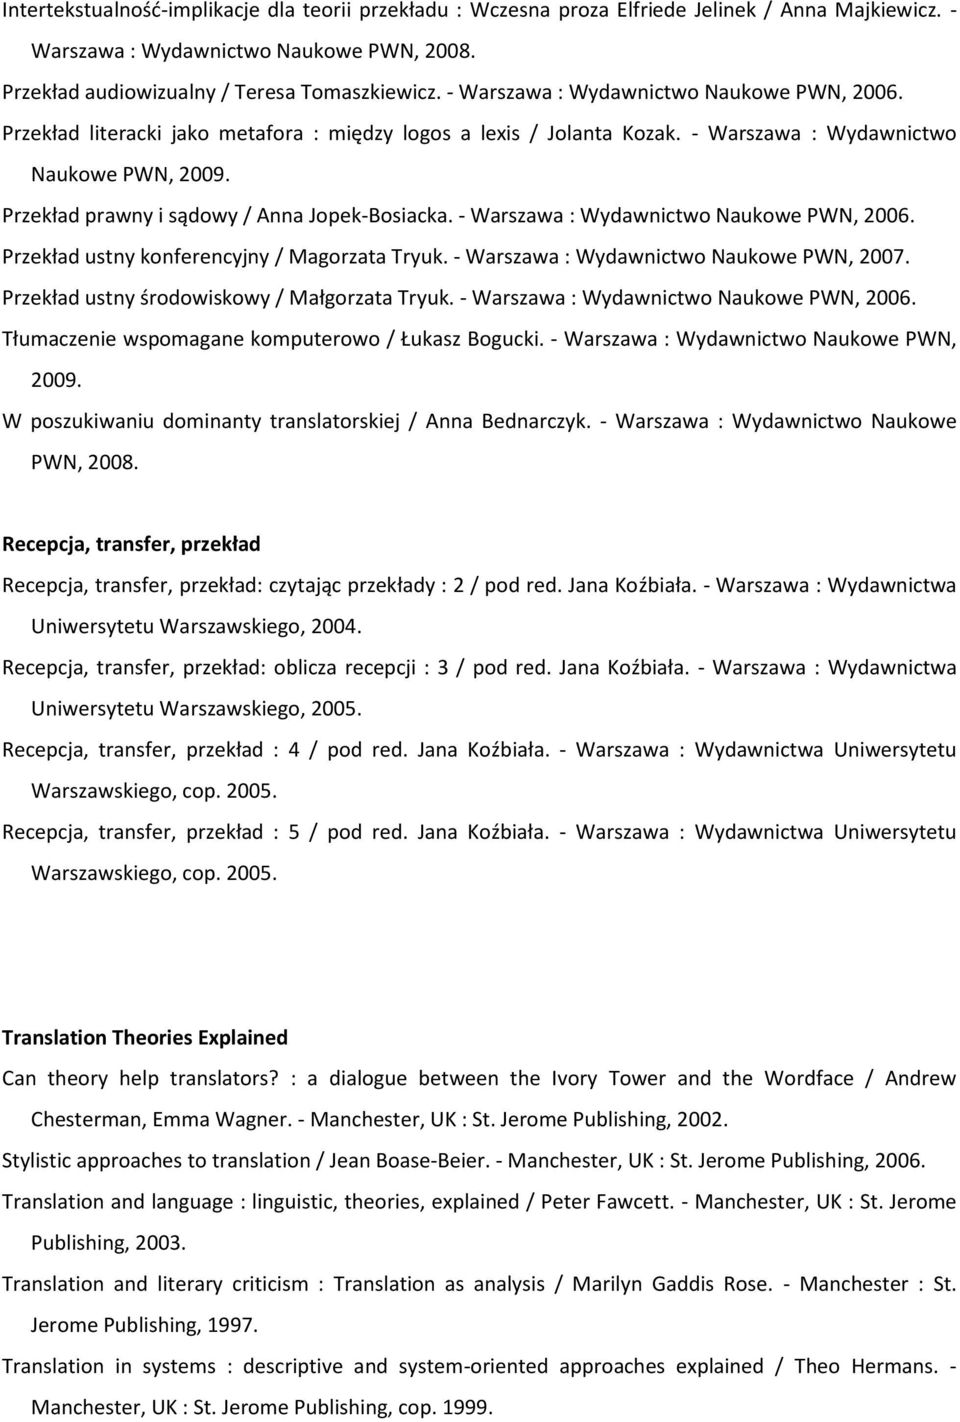 Przekład prawny i sądowy / Anna Jopek-Bosiacka. - Warszawa : Wydawnictwo Naukowe PWN, 2006. Przekład ustny konferencyjny / Magorzata Tryuk. - Warszawa : Wydawnictwo Naukowe PWN, 2007.